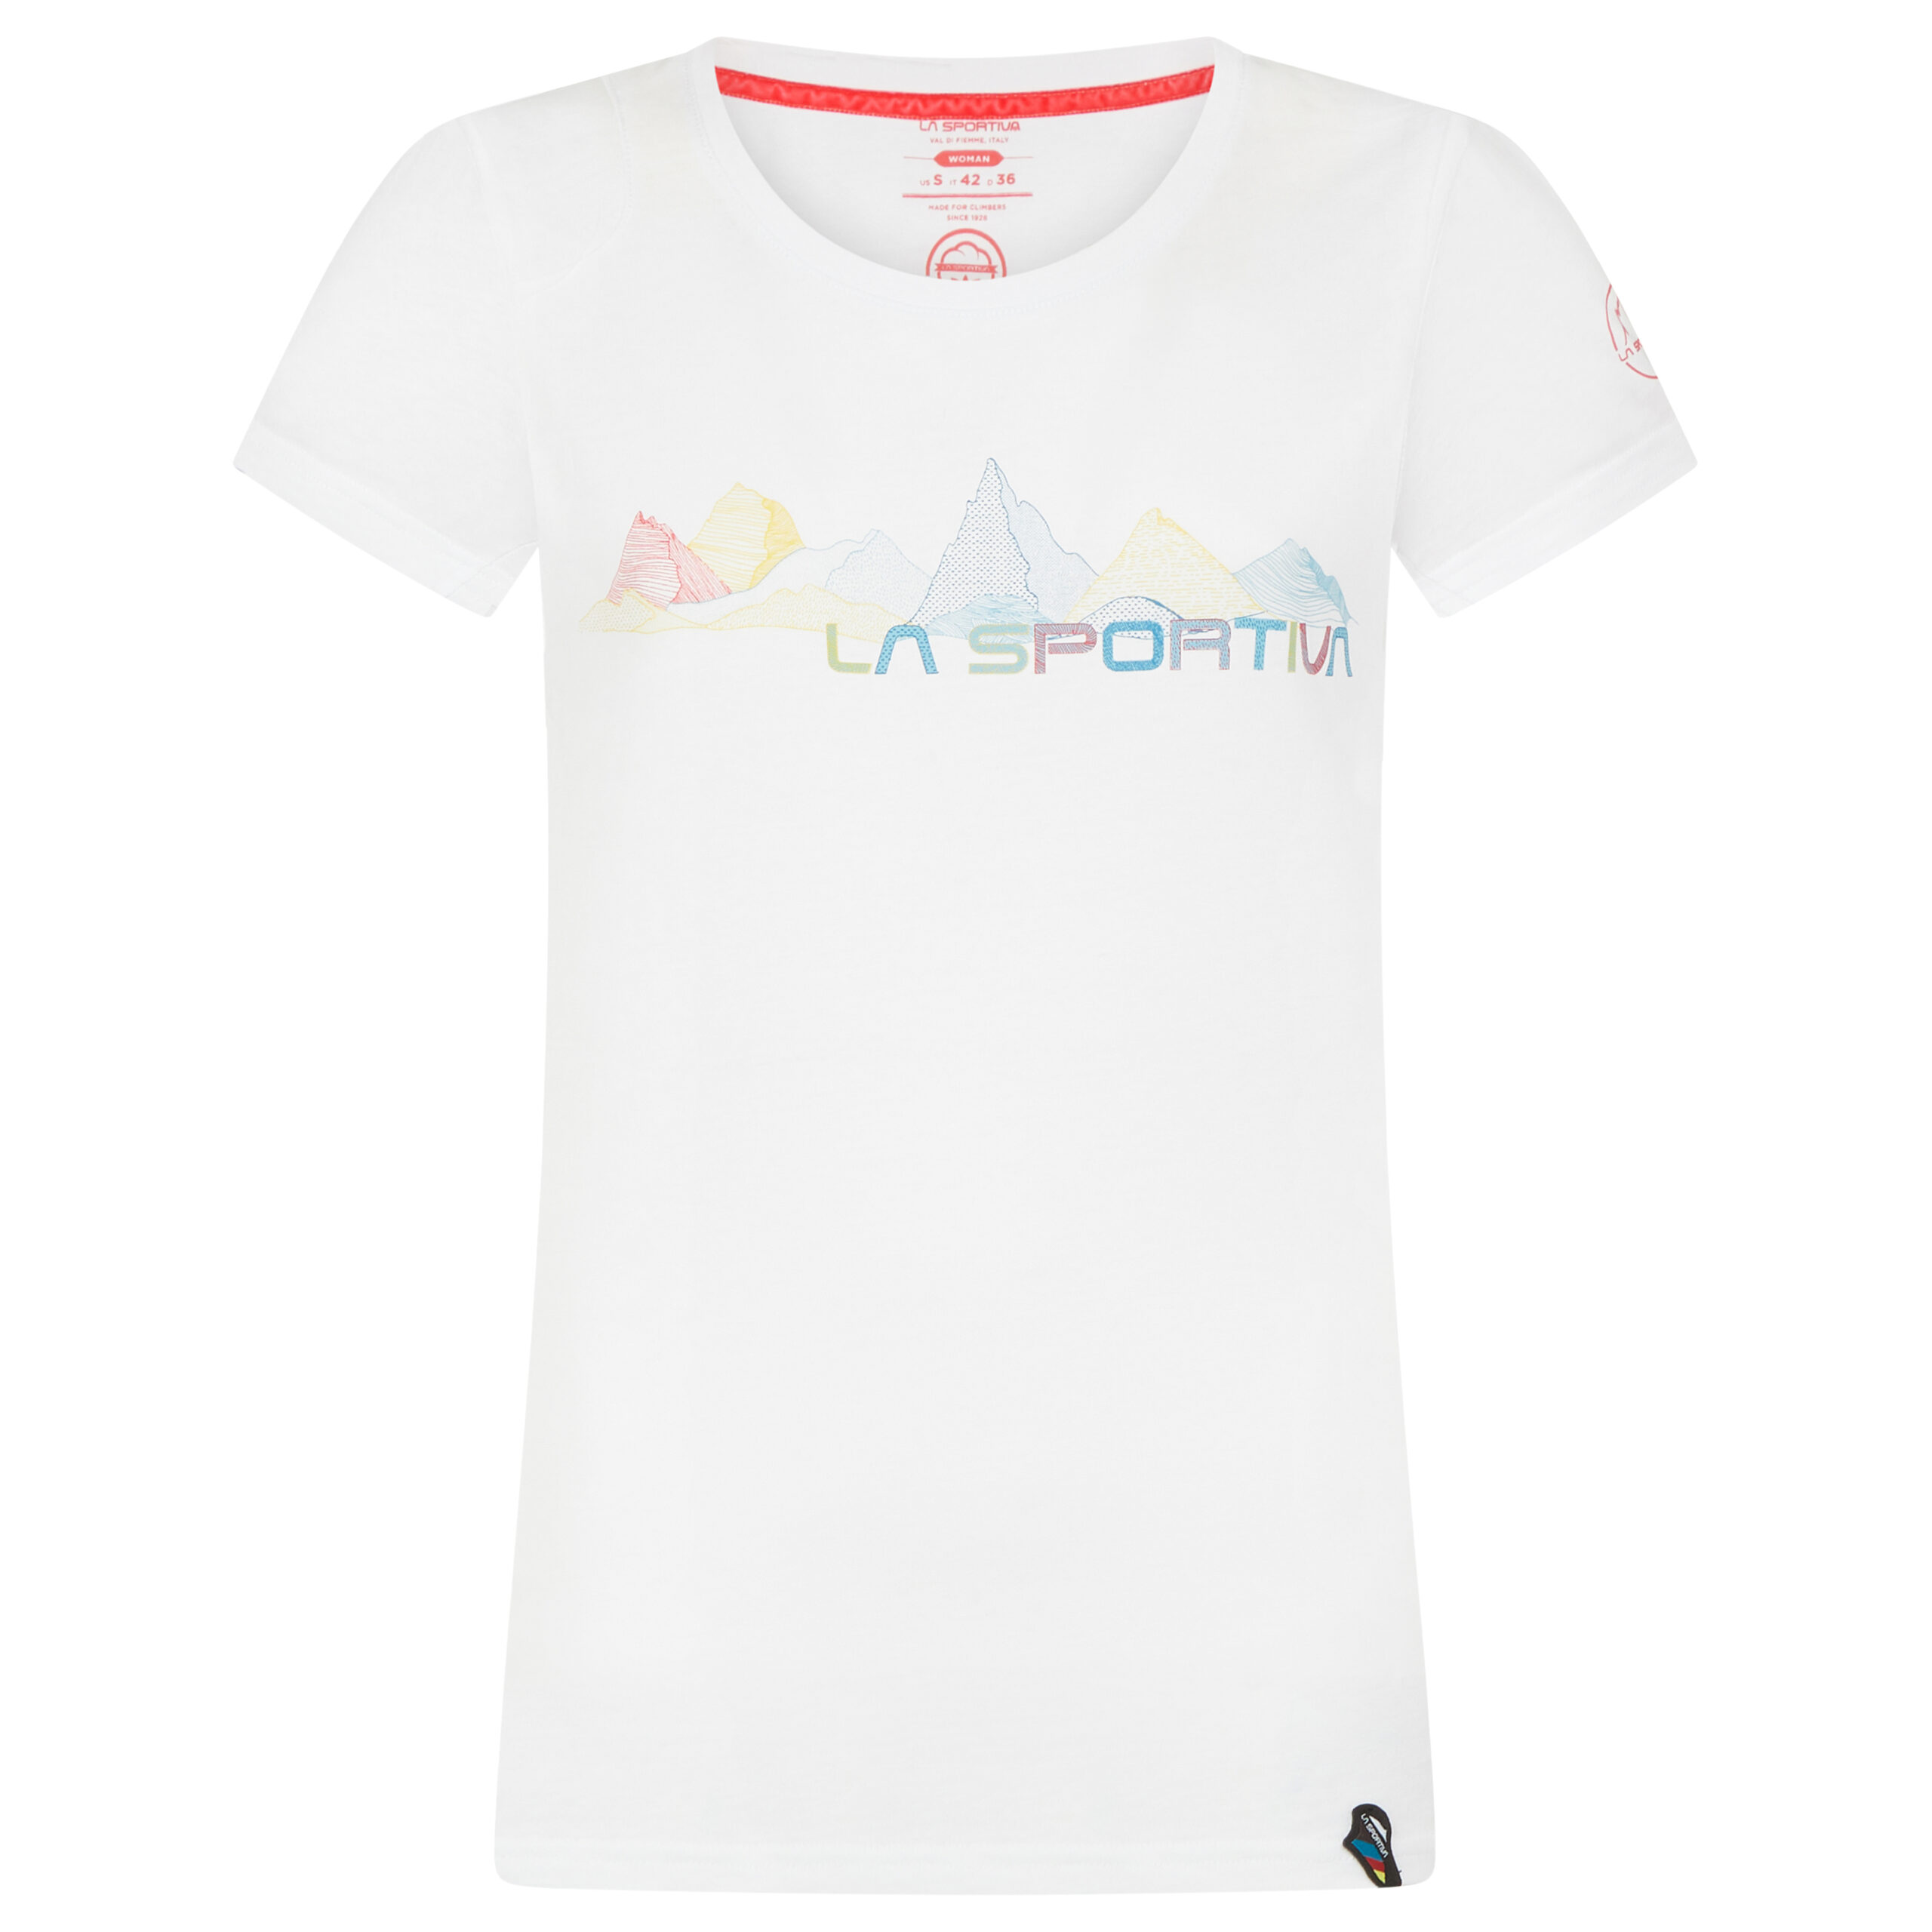 LasportivaPeaks
Logoshirt